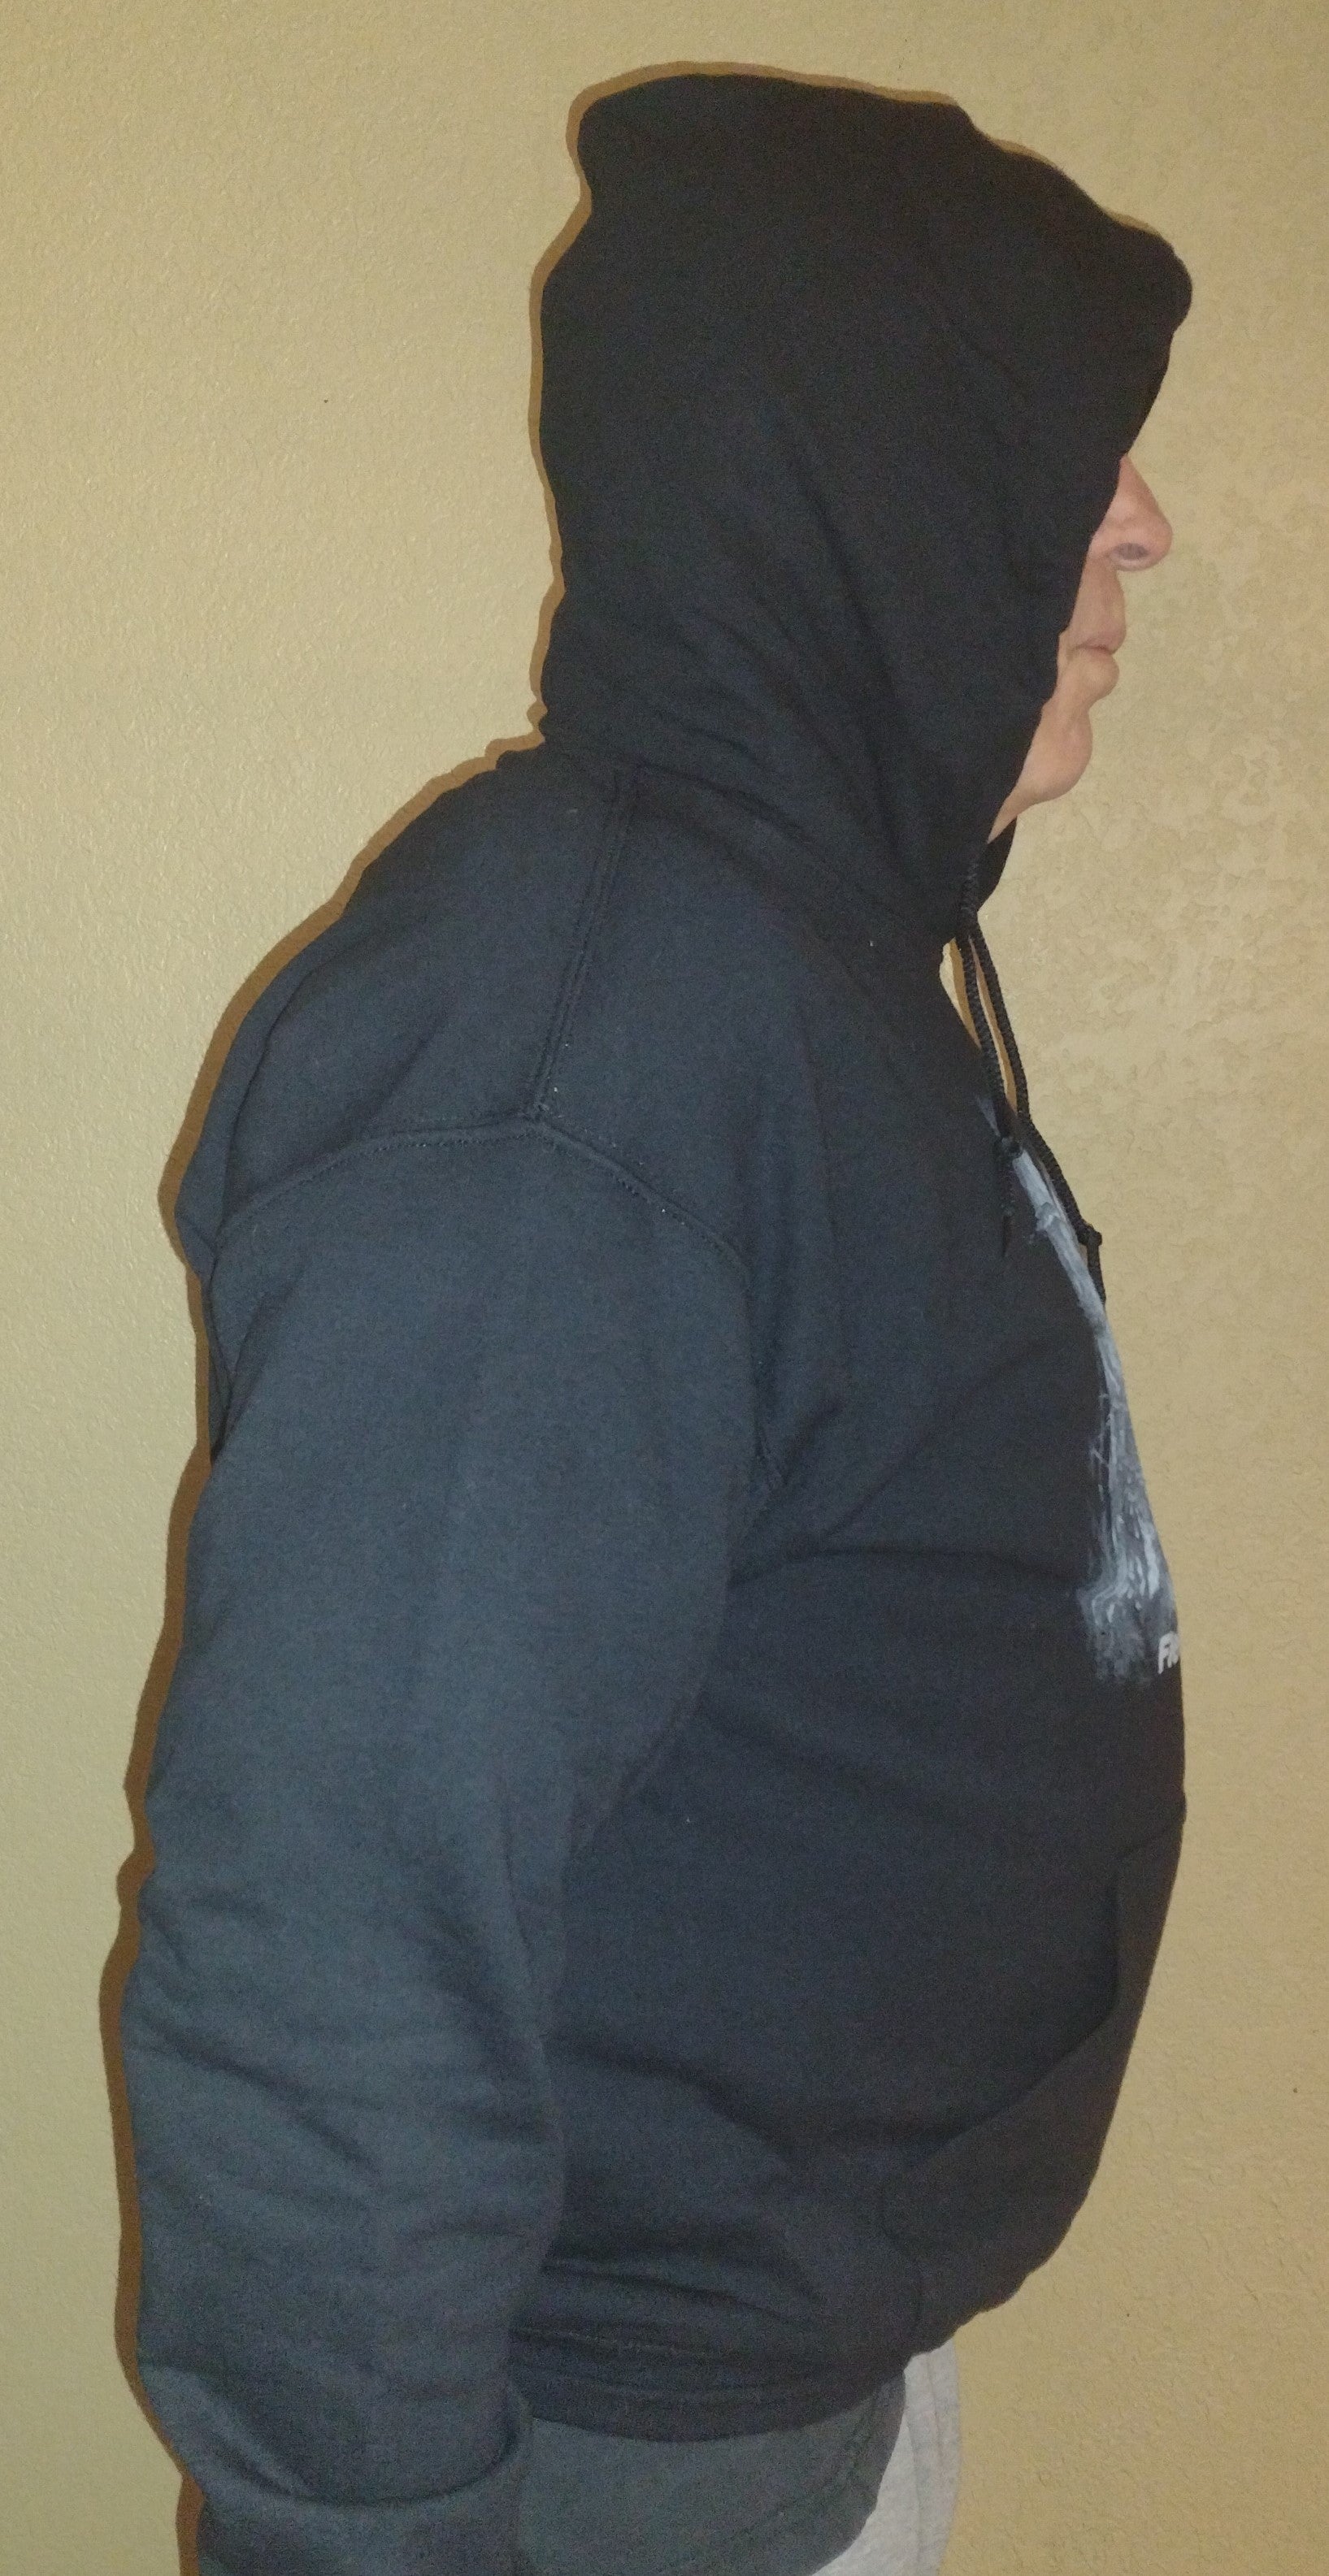 "Pheasant" Black Hooded Sweatshirt